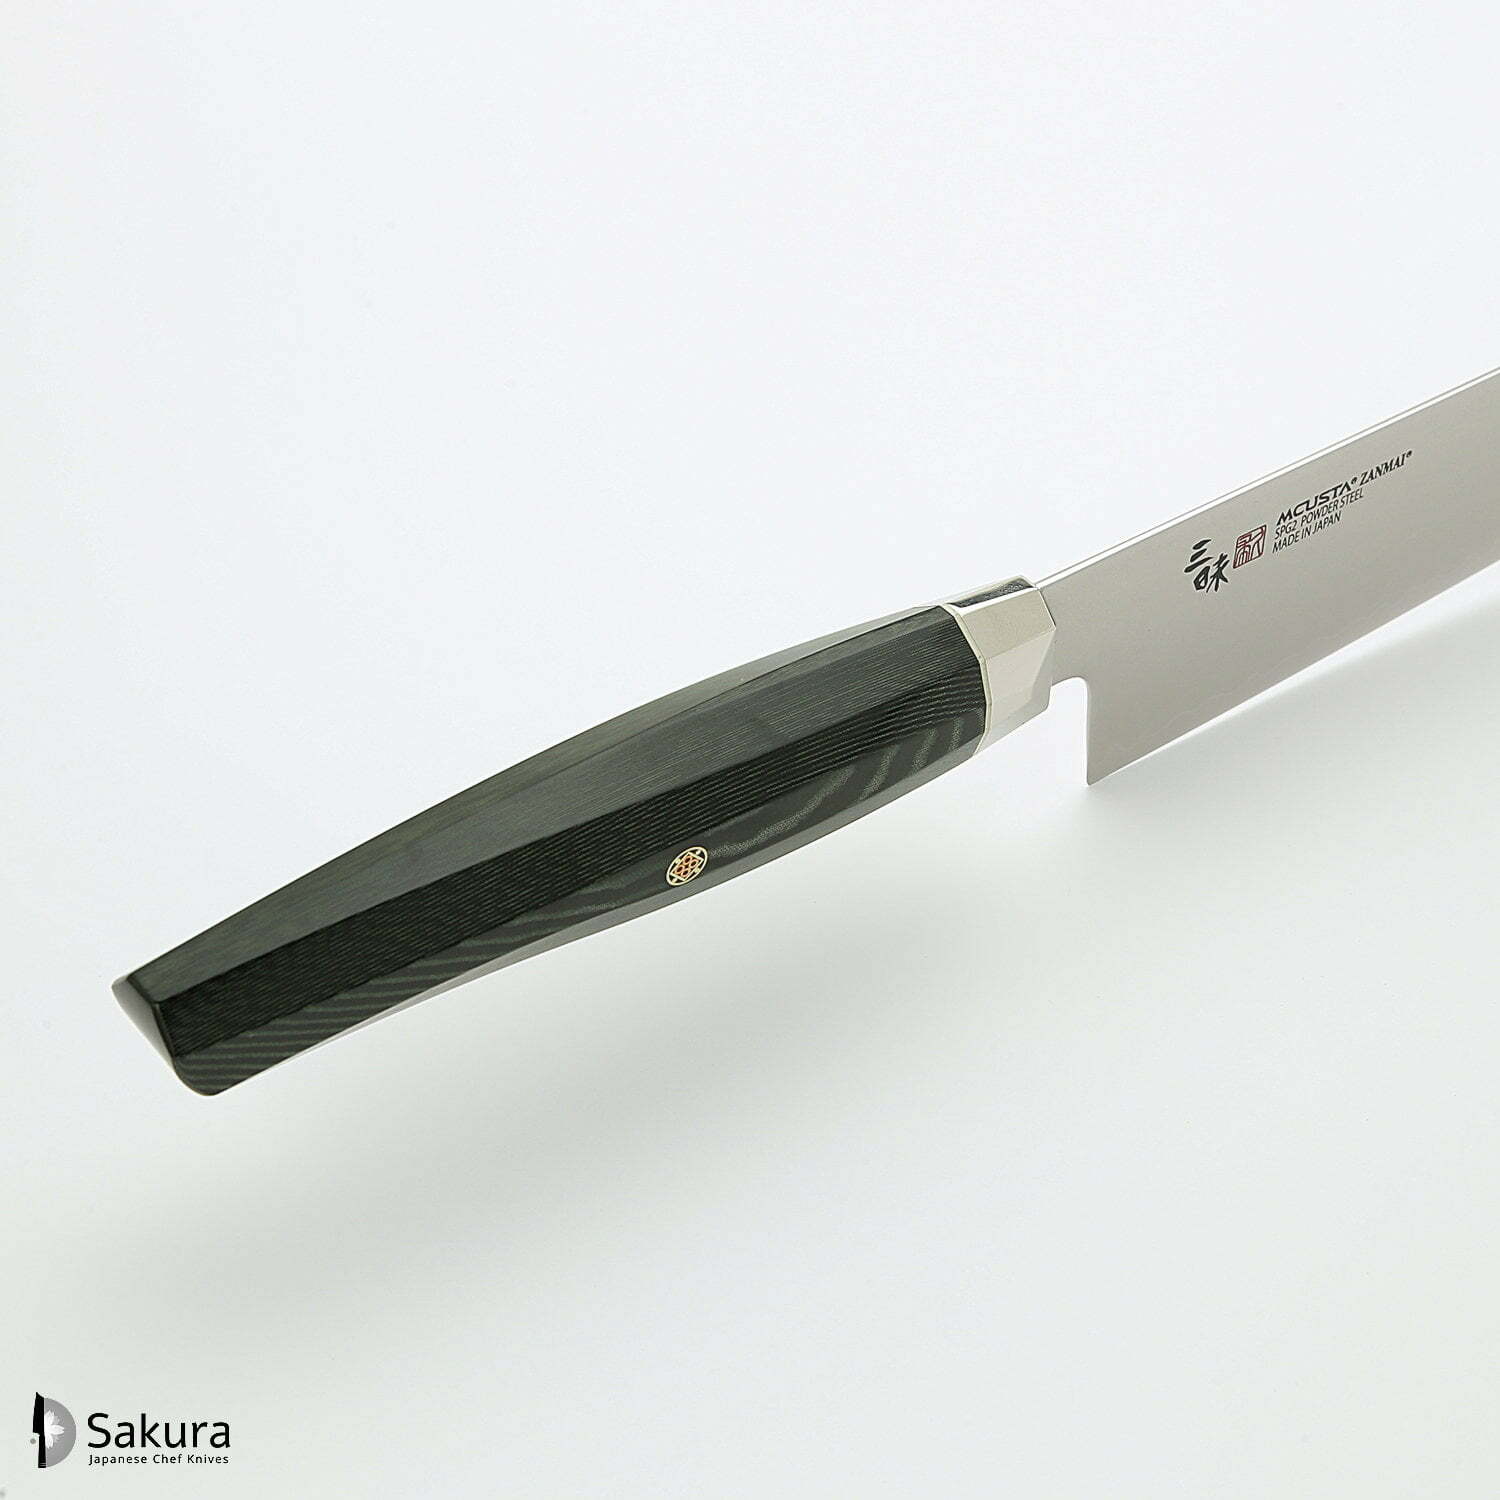 סכין שף רב-תכליתית קִּירִיצוּקֶה 230מ״מ מחושלת בעבודת יד 3 שכבות: פלדת פחמן יפנית מתקדמת מסוג R2/SG2 עטופה פלדת אל-חלד גימור מט מלוטש מקוסטה זאנמאיי יפן ZRG-1206G